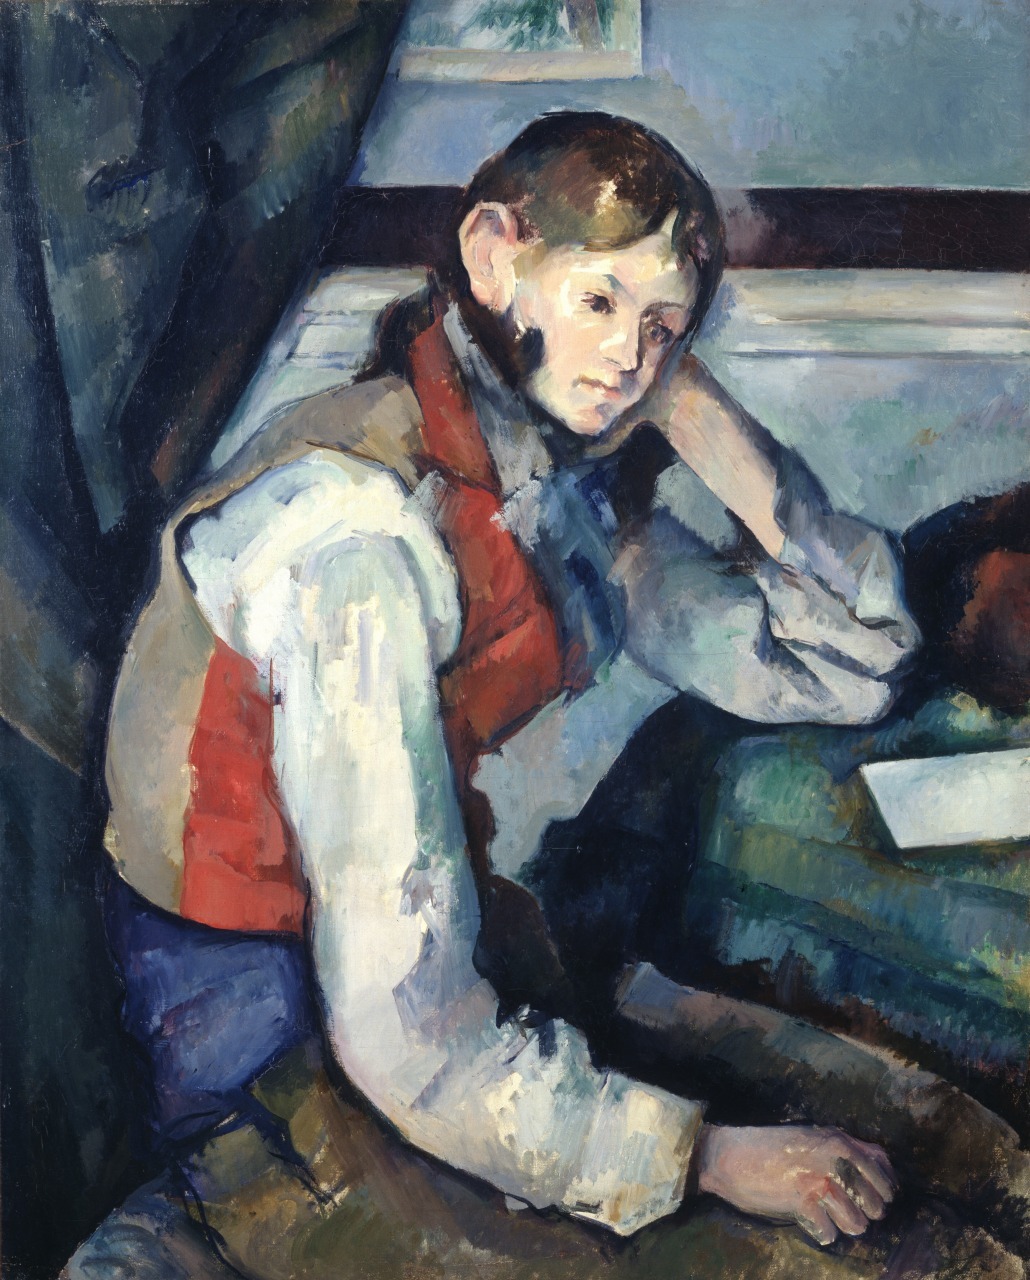 ポール・セザンヌ《赤いチョッキの少年》1888/90年頃　油彩、カンヴァス79.5×64cm